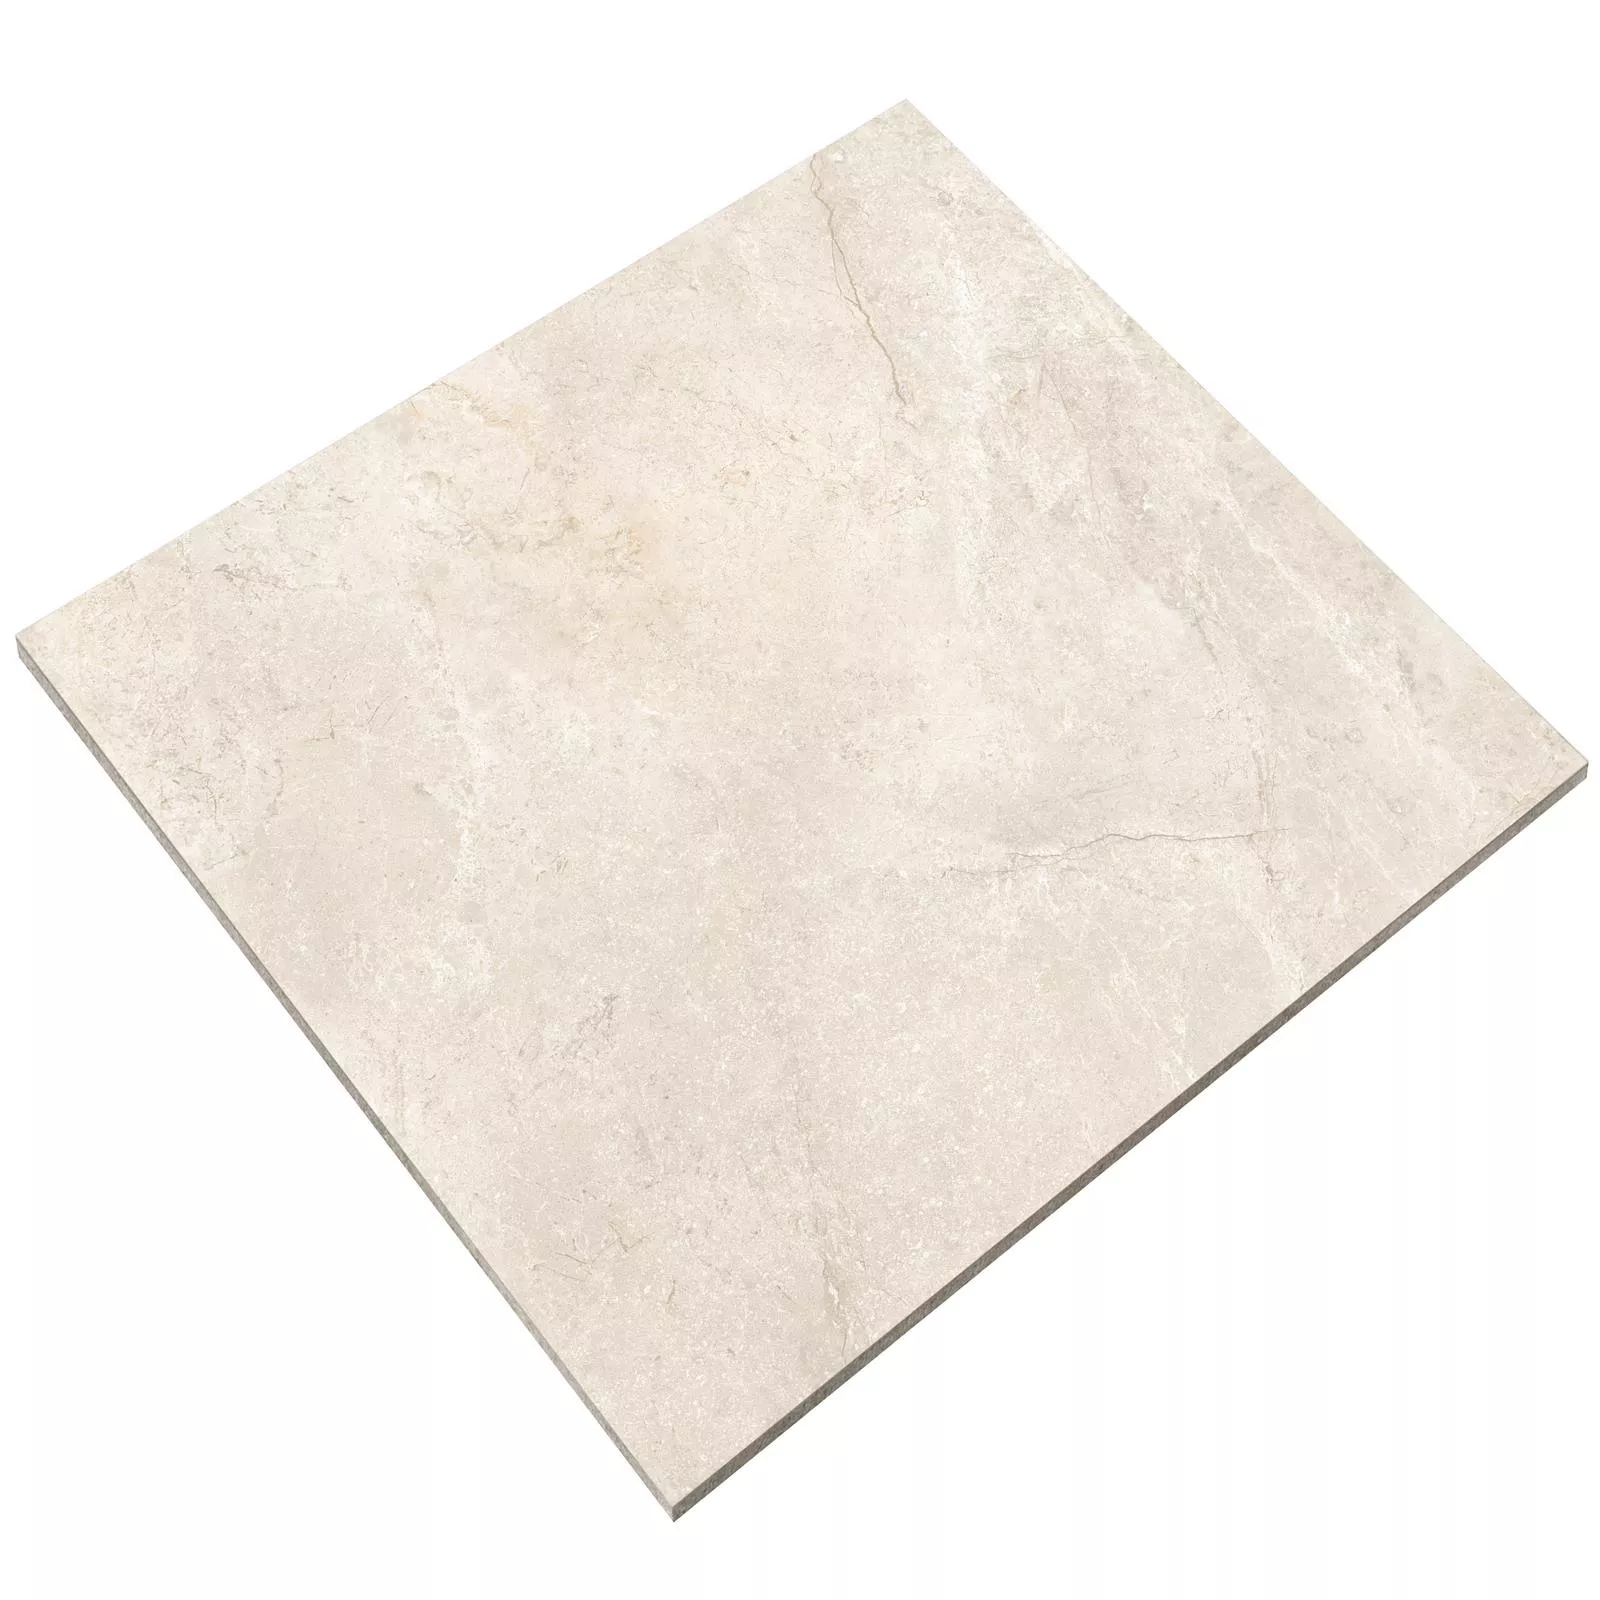 Πρότυπο Πλακάκι Δαπέδου Noiron Παγωμένος Αμεμπτος Kρέμα 60x60cm